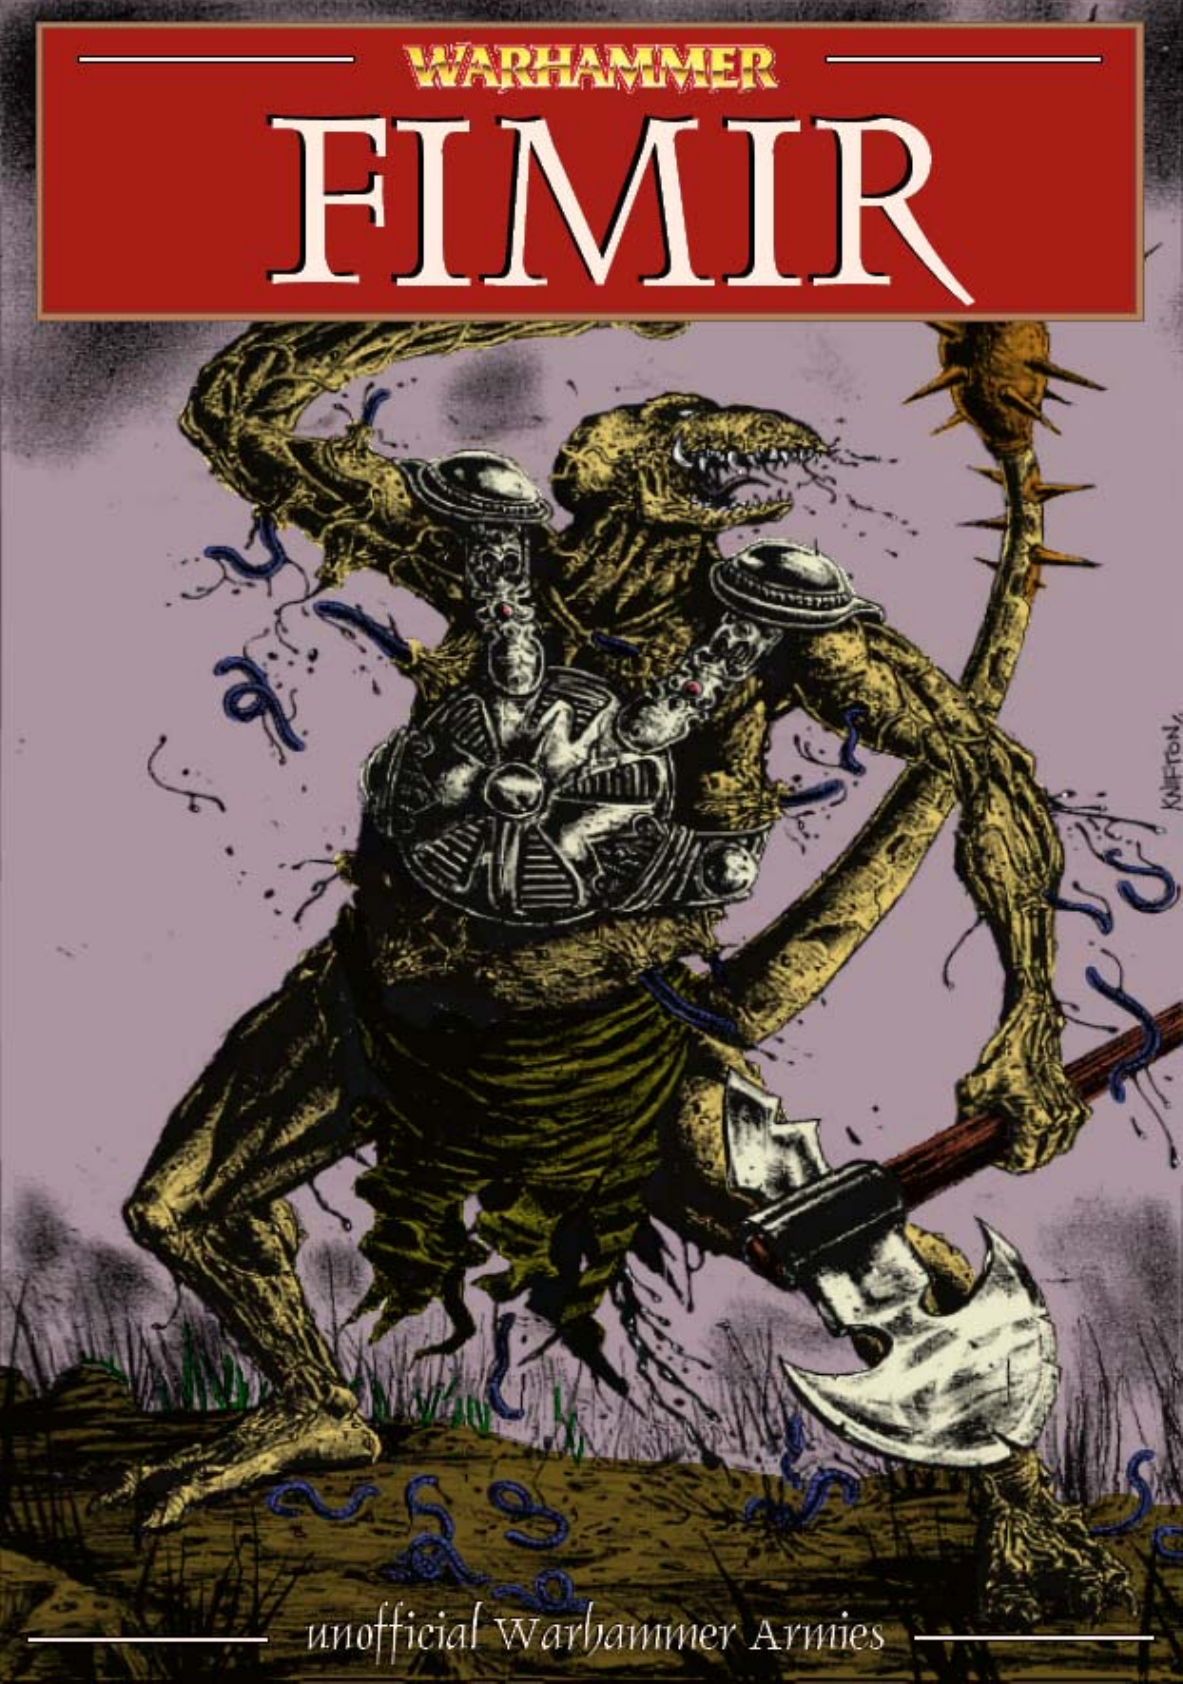 warhammer lizardmen 8th edition pdf